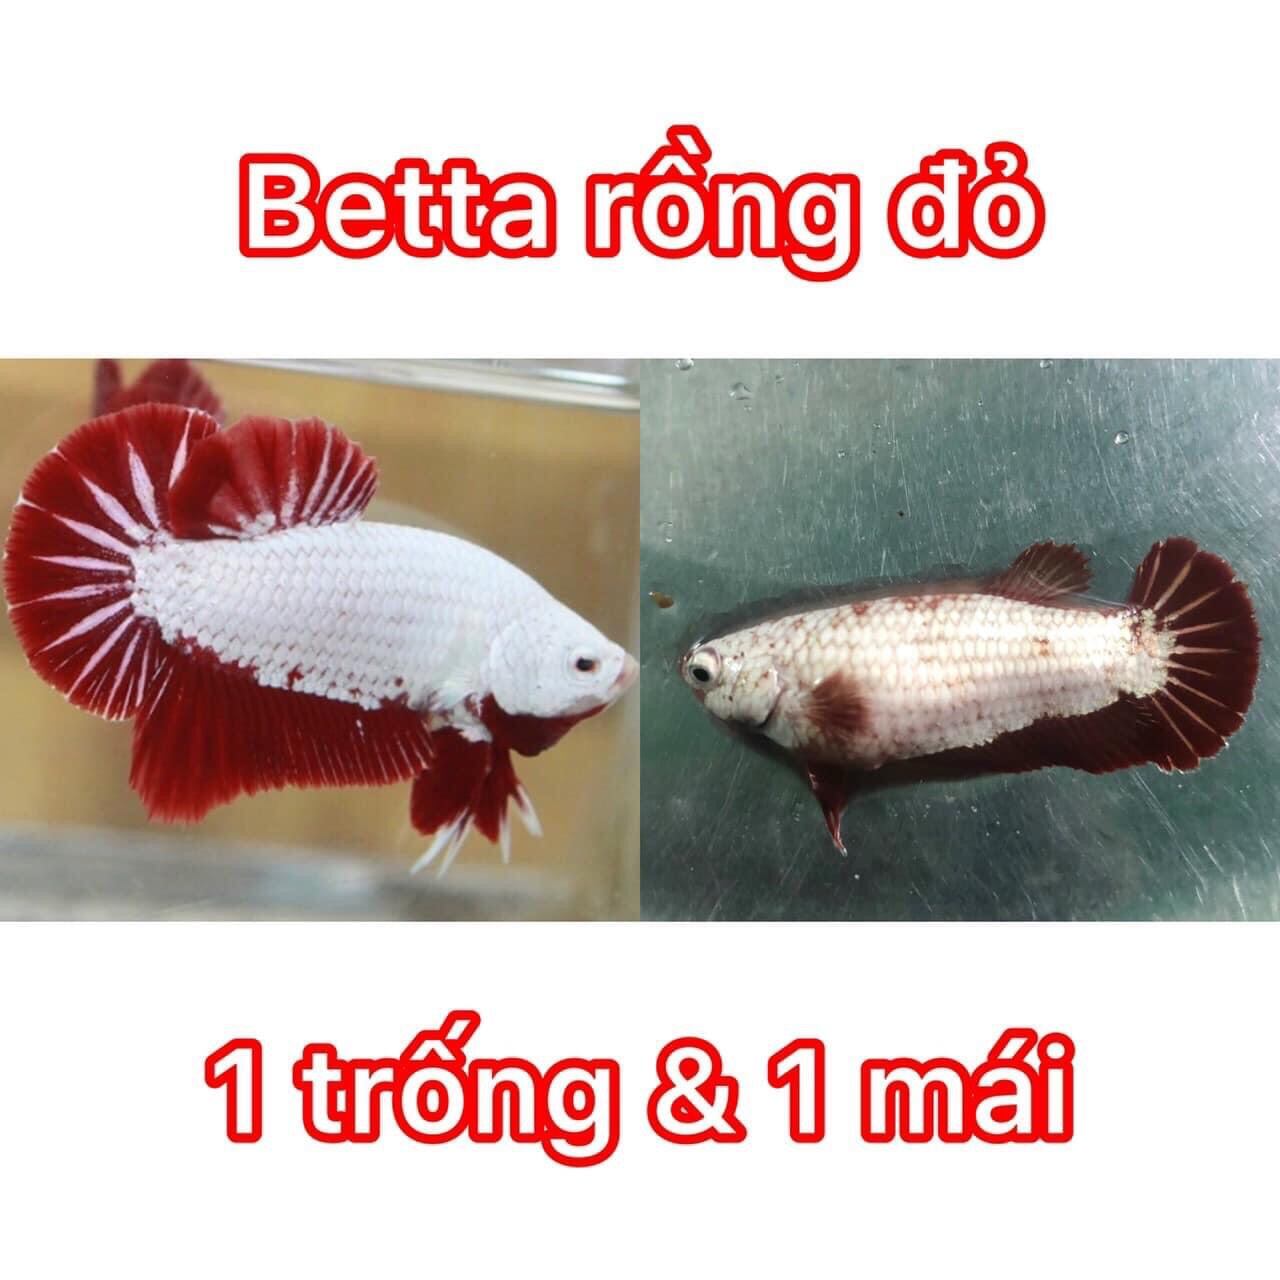 (Thức ăn cá)) và Betta Rồng Đỏ 1 cặp.Tặng Thức ăn